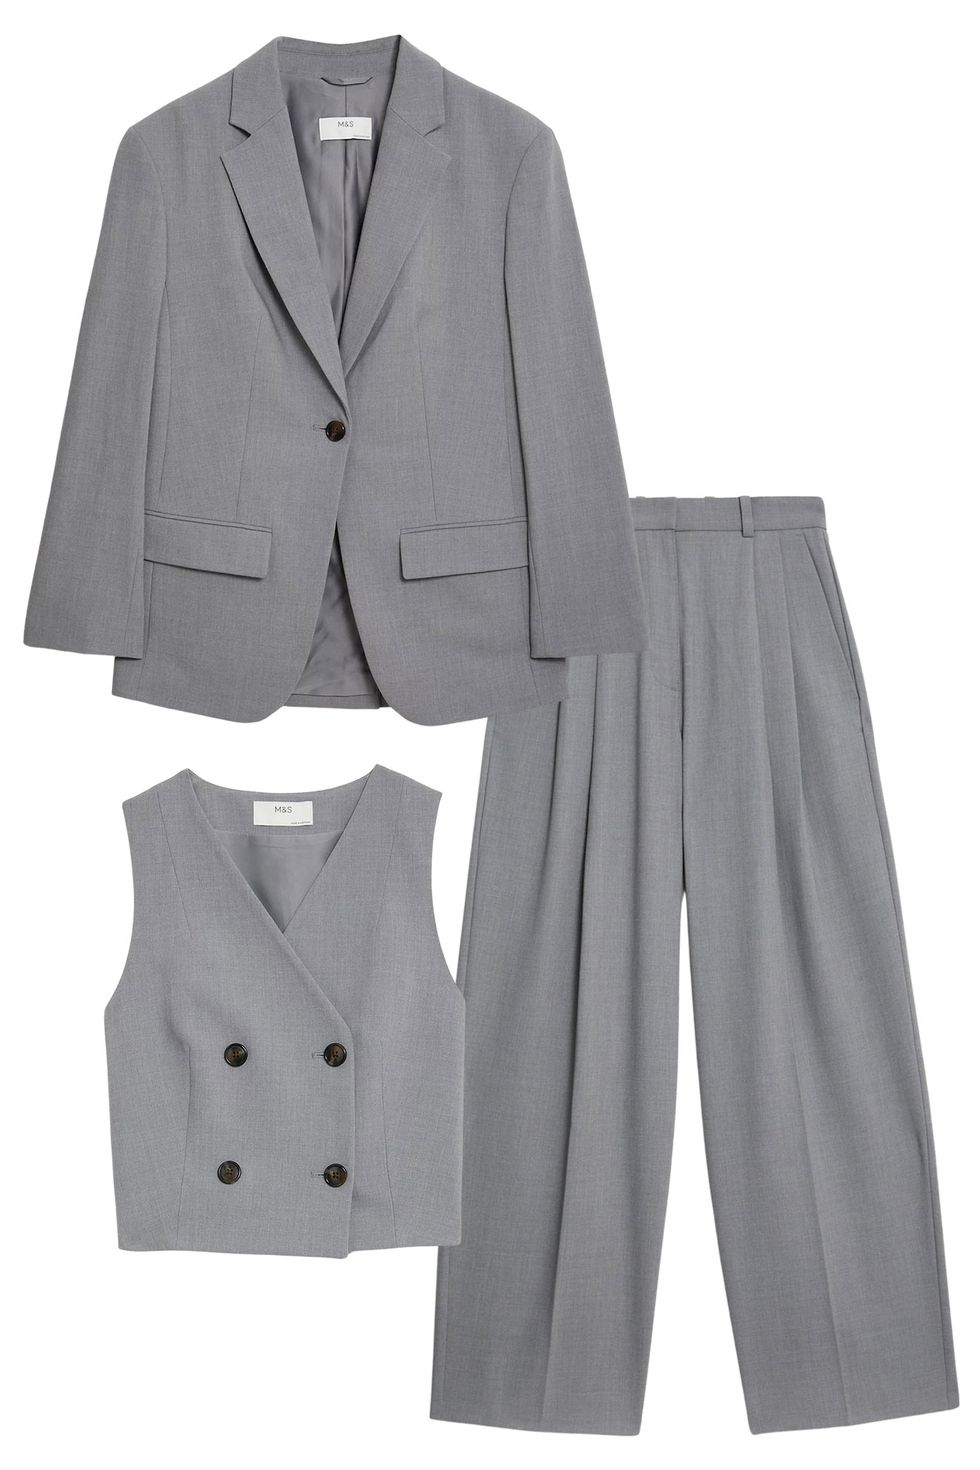 Ladies trouser suit: 14 best women's trouser suits